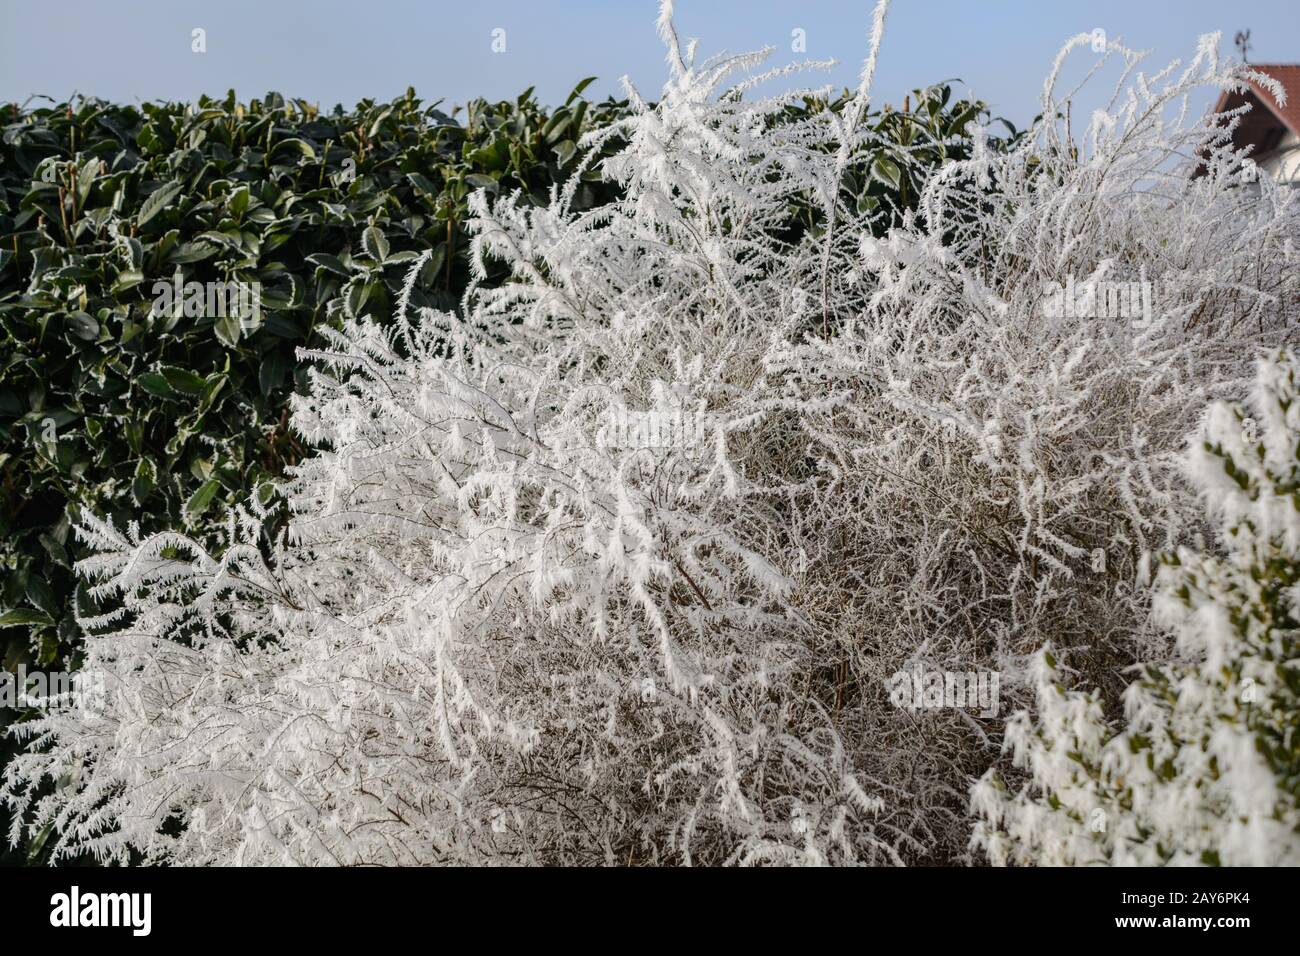 Le froid de morsure s'affiche dans le givre sur le buisson d'arrosage et le cerisier laurier Banque D'Images